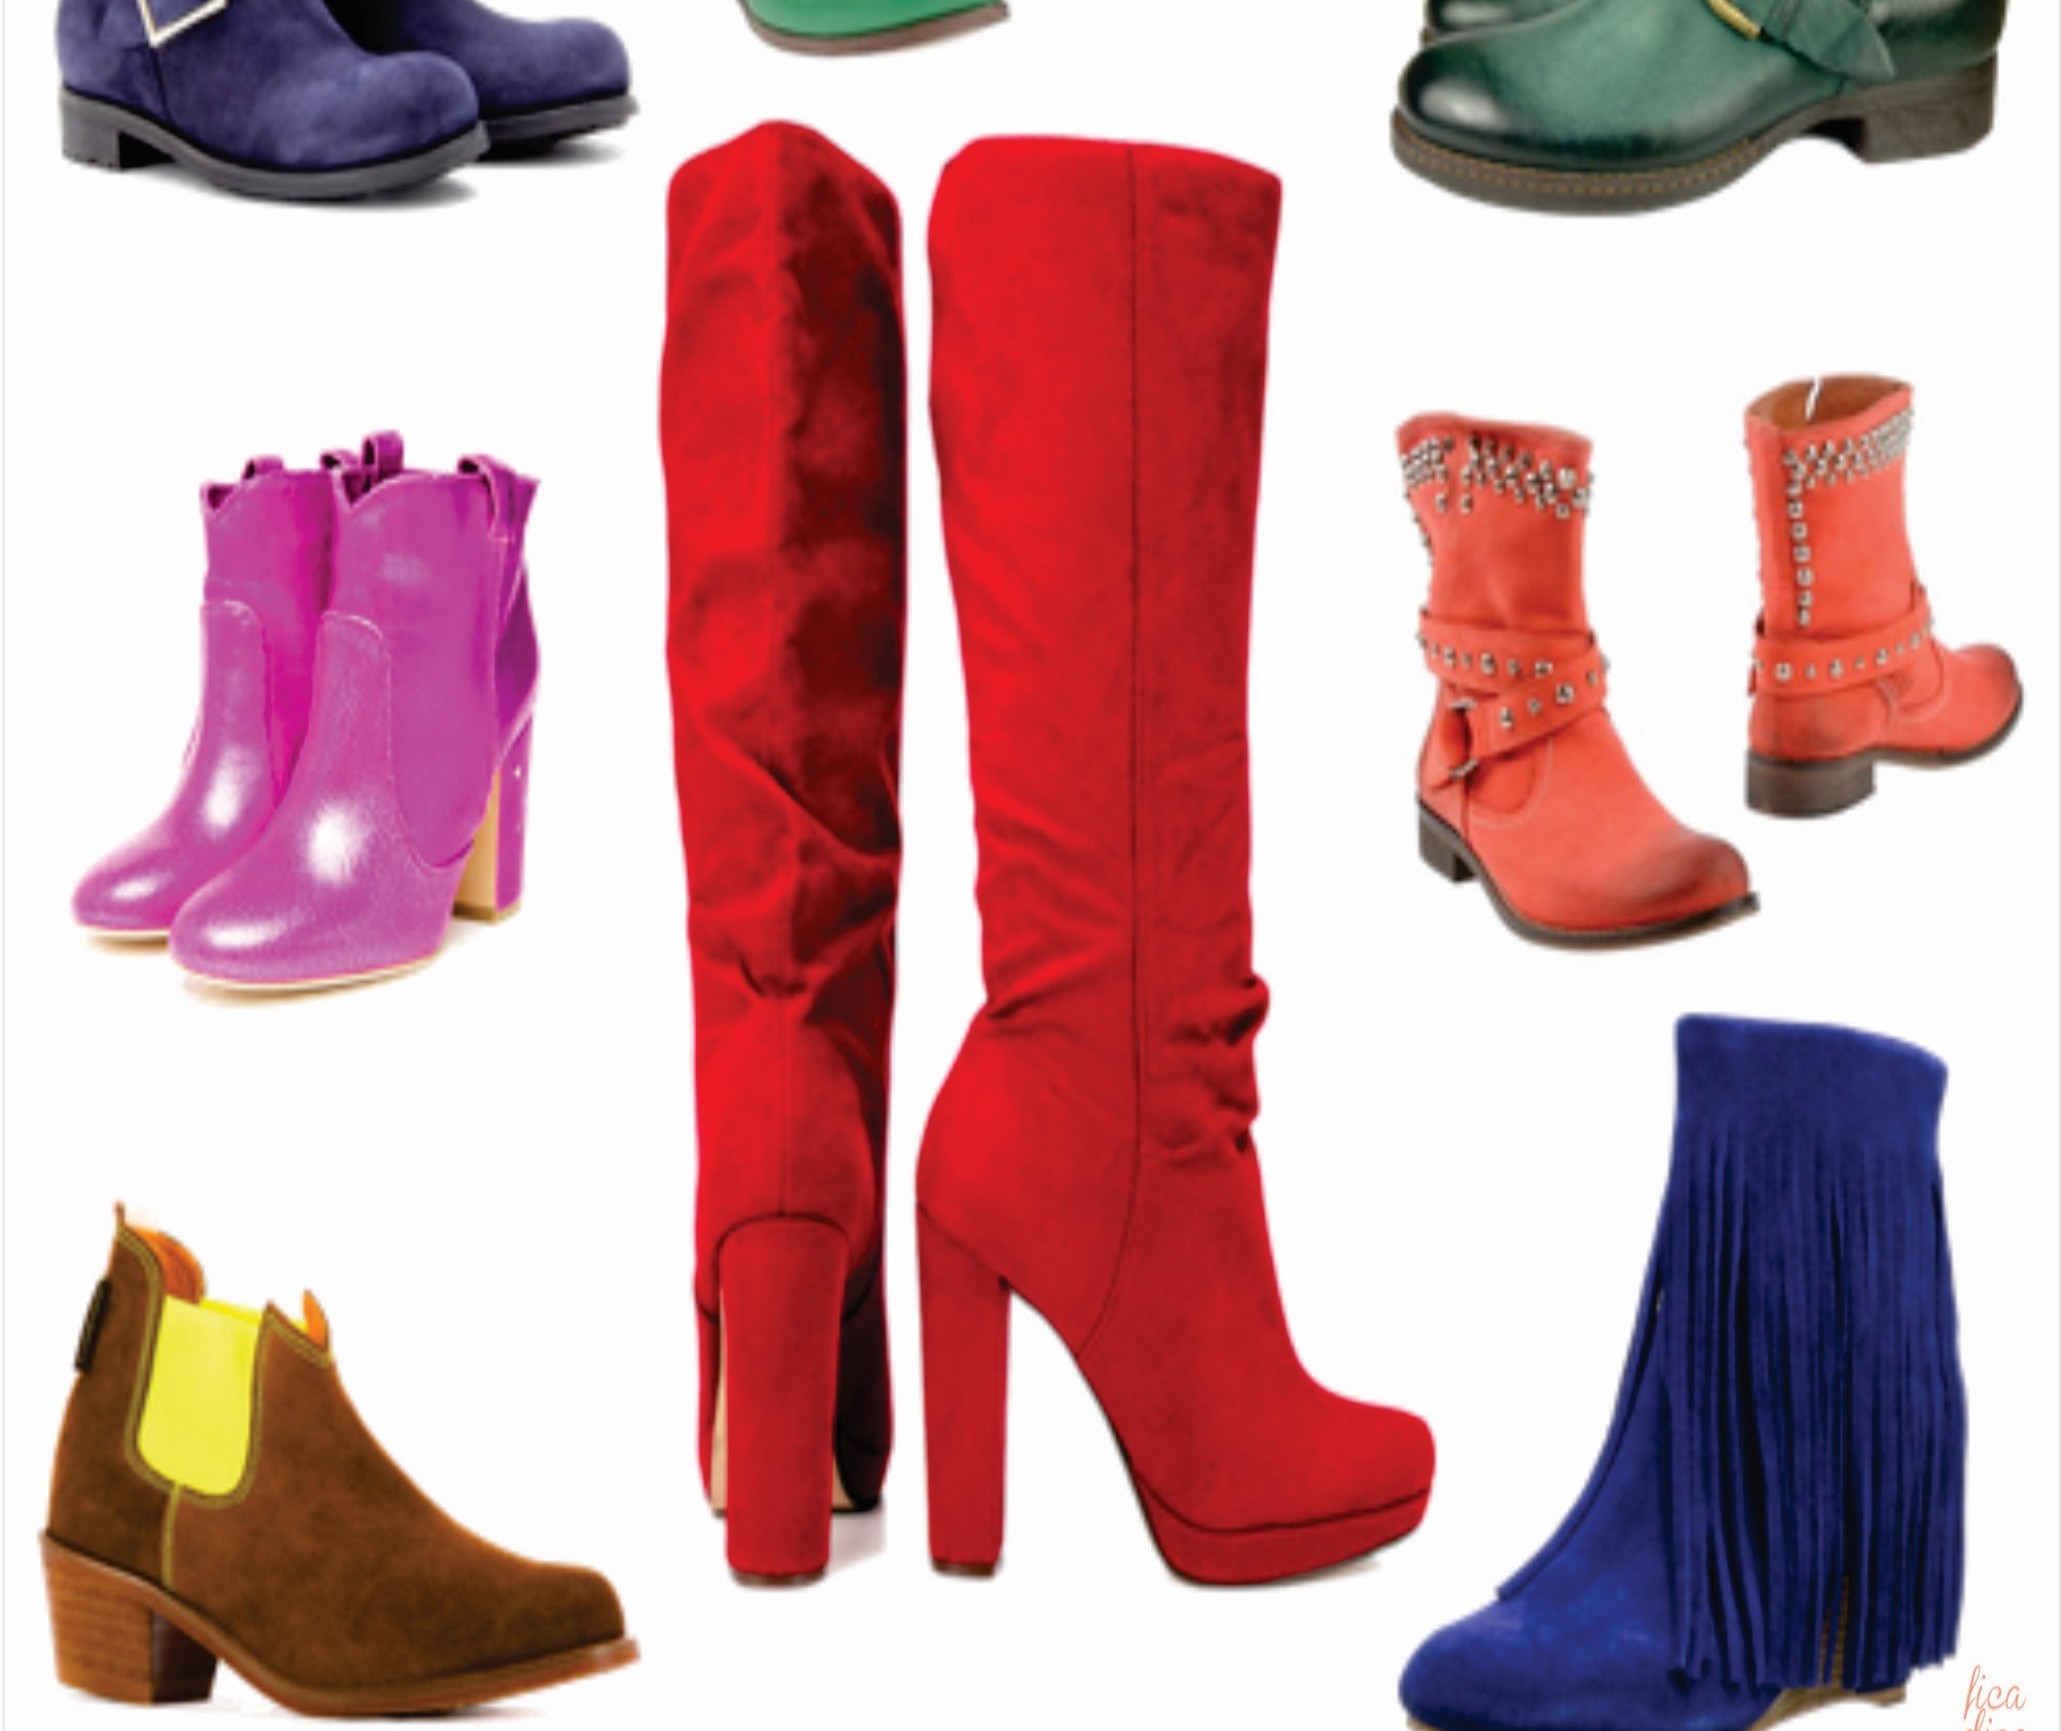 Sapatos coloridos estão em alta na coleção outono-inverno